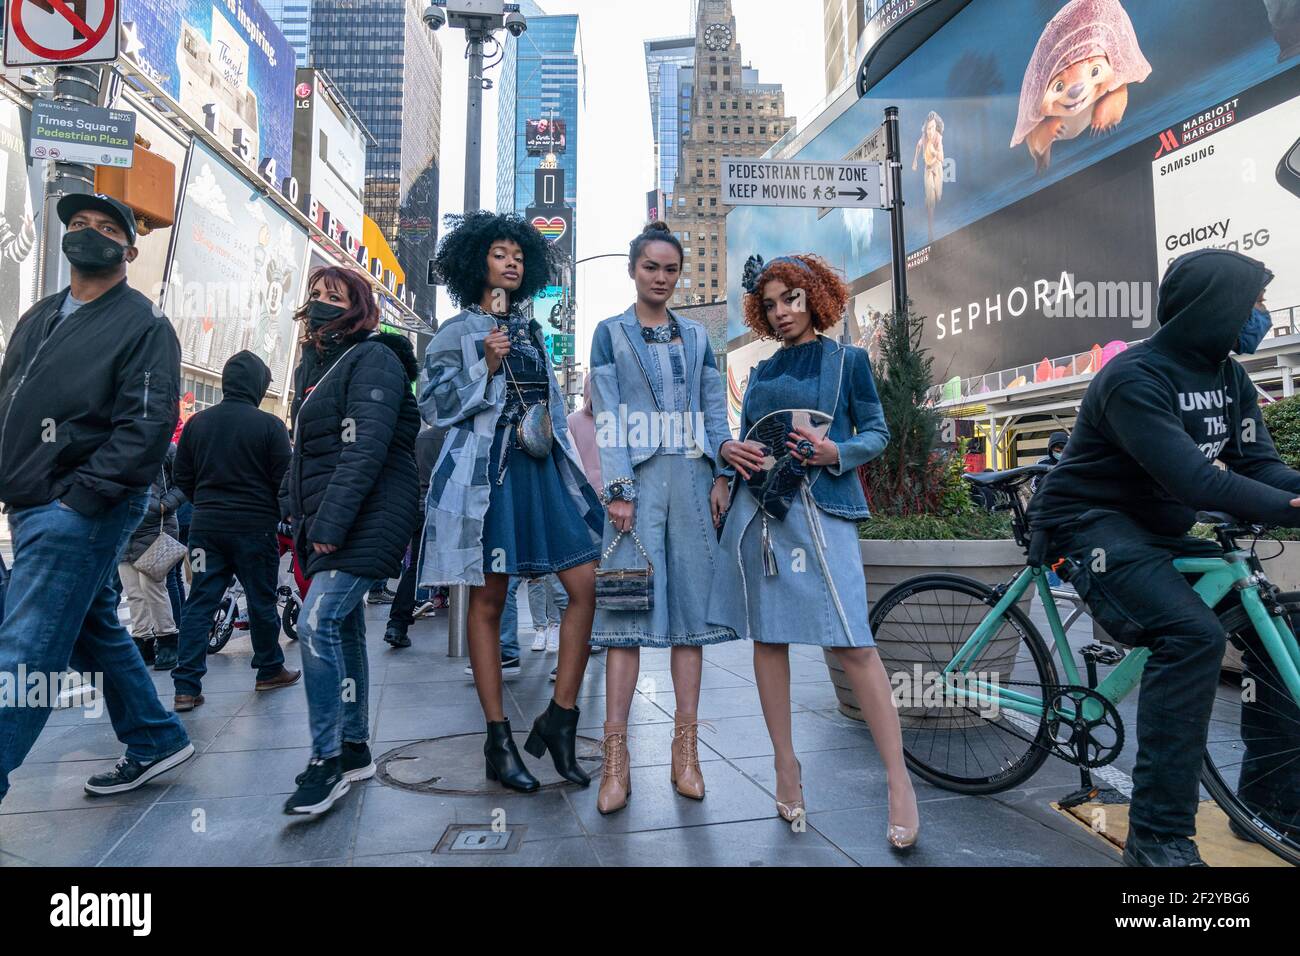 Nueva York, NY - 13 de marzo de 2021: Marina Gil-Lemesheva presenta su  diseño de moda y accesorios en Times Square mientras protesta por Breonna  Taylor se desarrolla en el fondo Fotografía